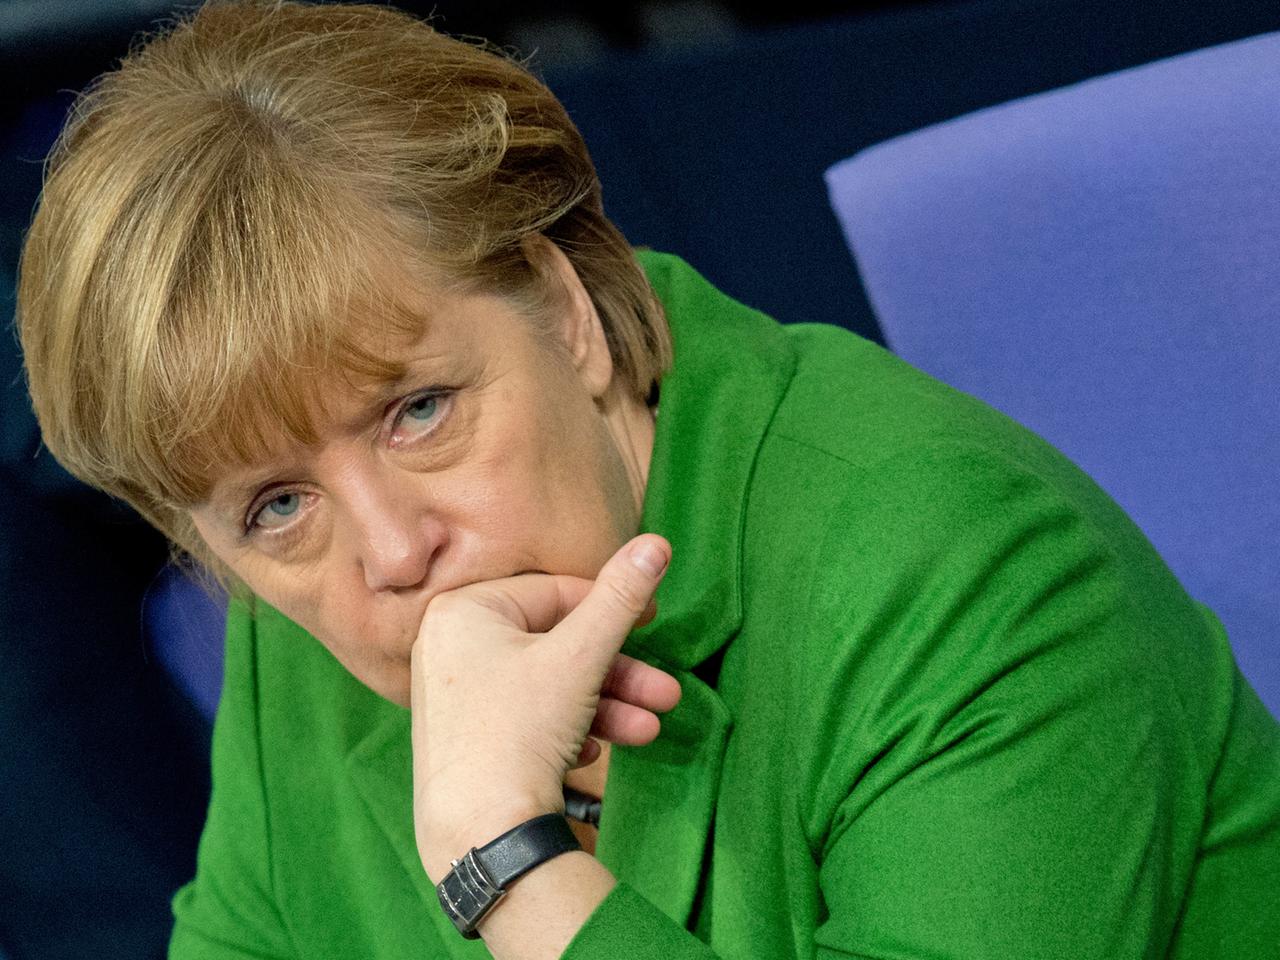 Angela Merkel sitzt auf der Regierungsbank im Bundestag